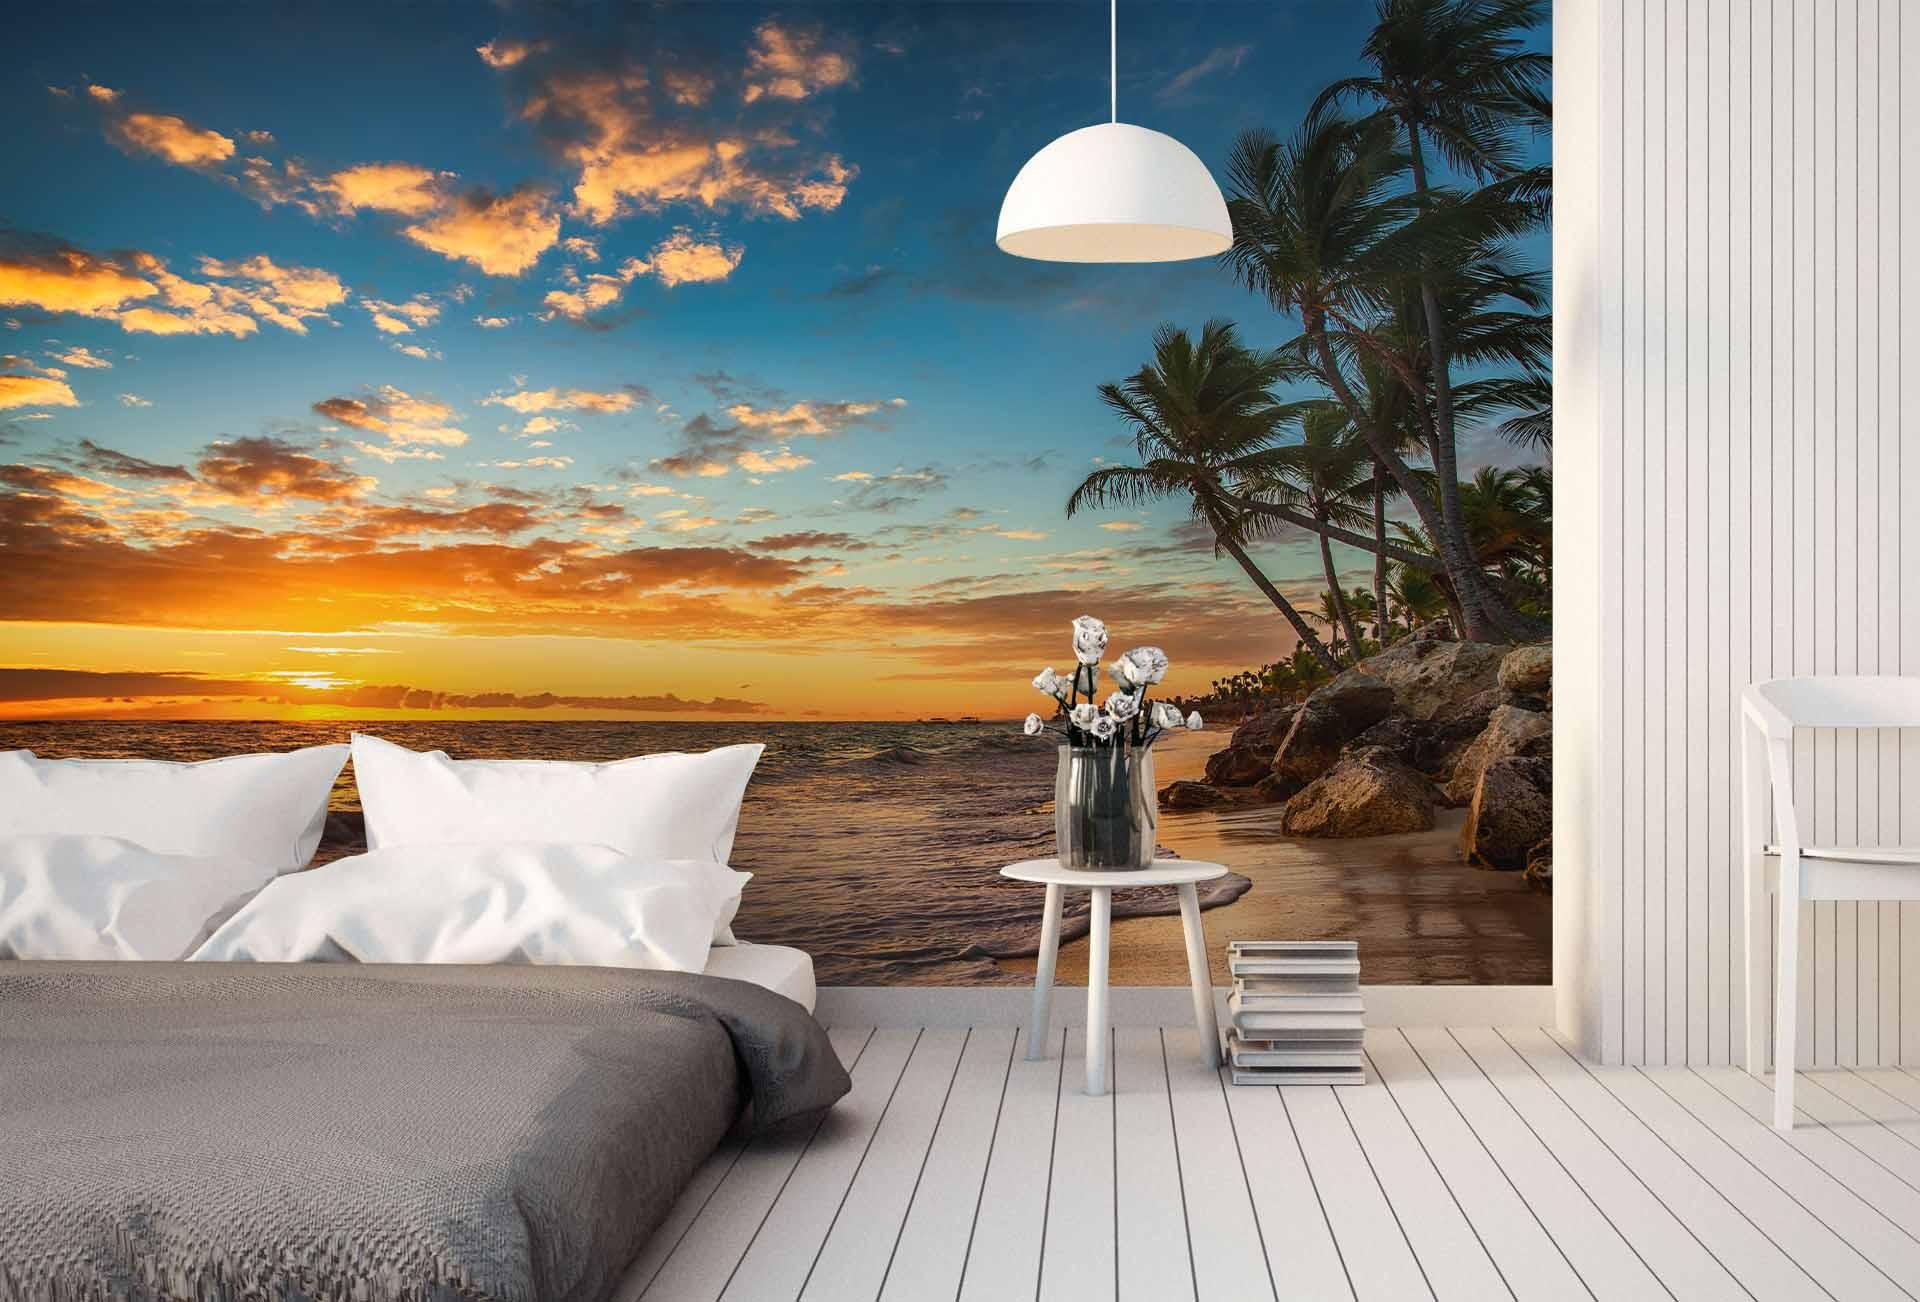 3D Sunset Tropical Beach Wall Mural Wallpaper  27- Jess Art Decoration